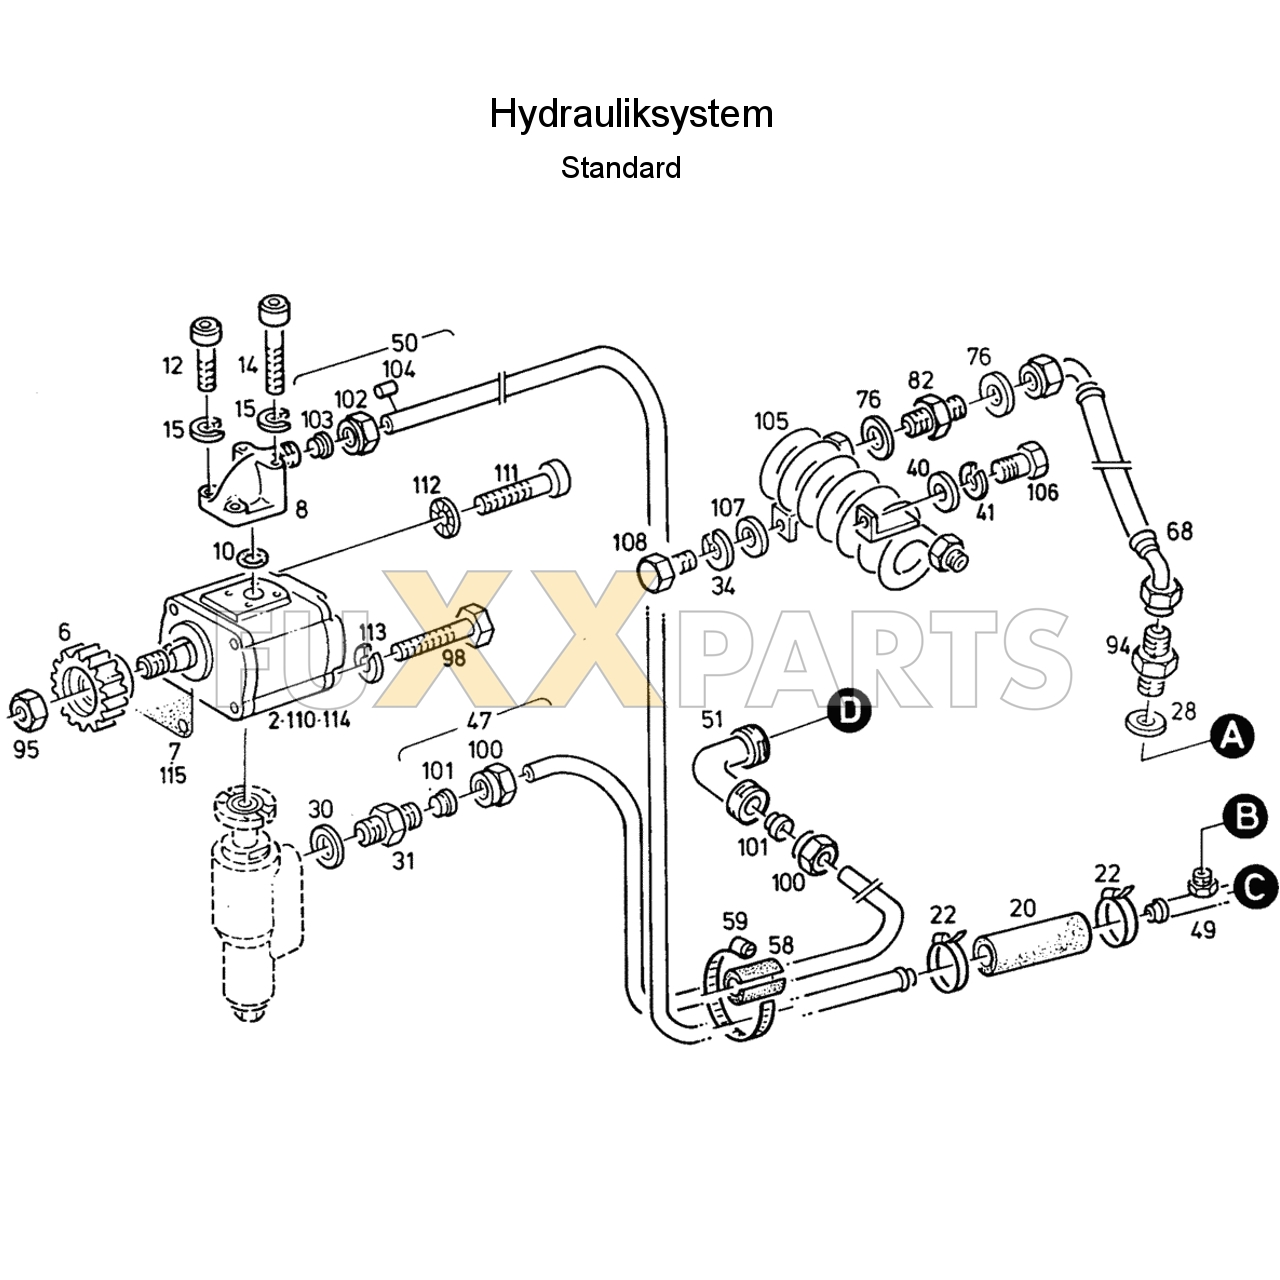 D 7807 C Hydrauliksystem Standard 1